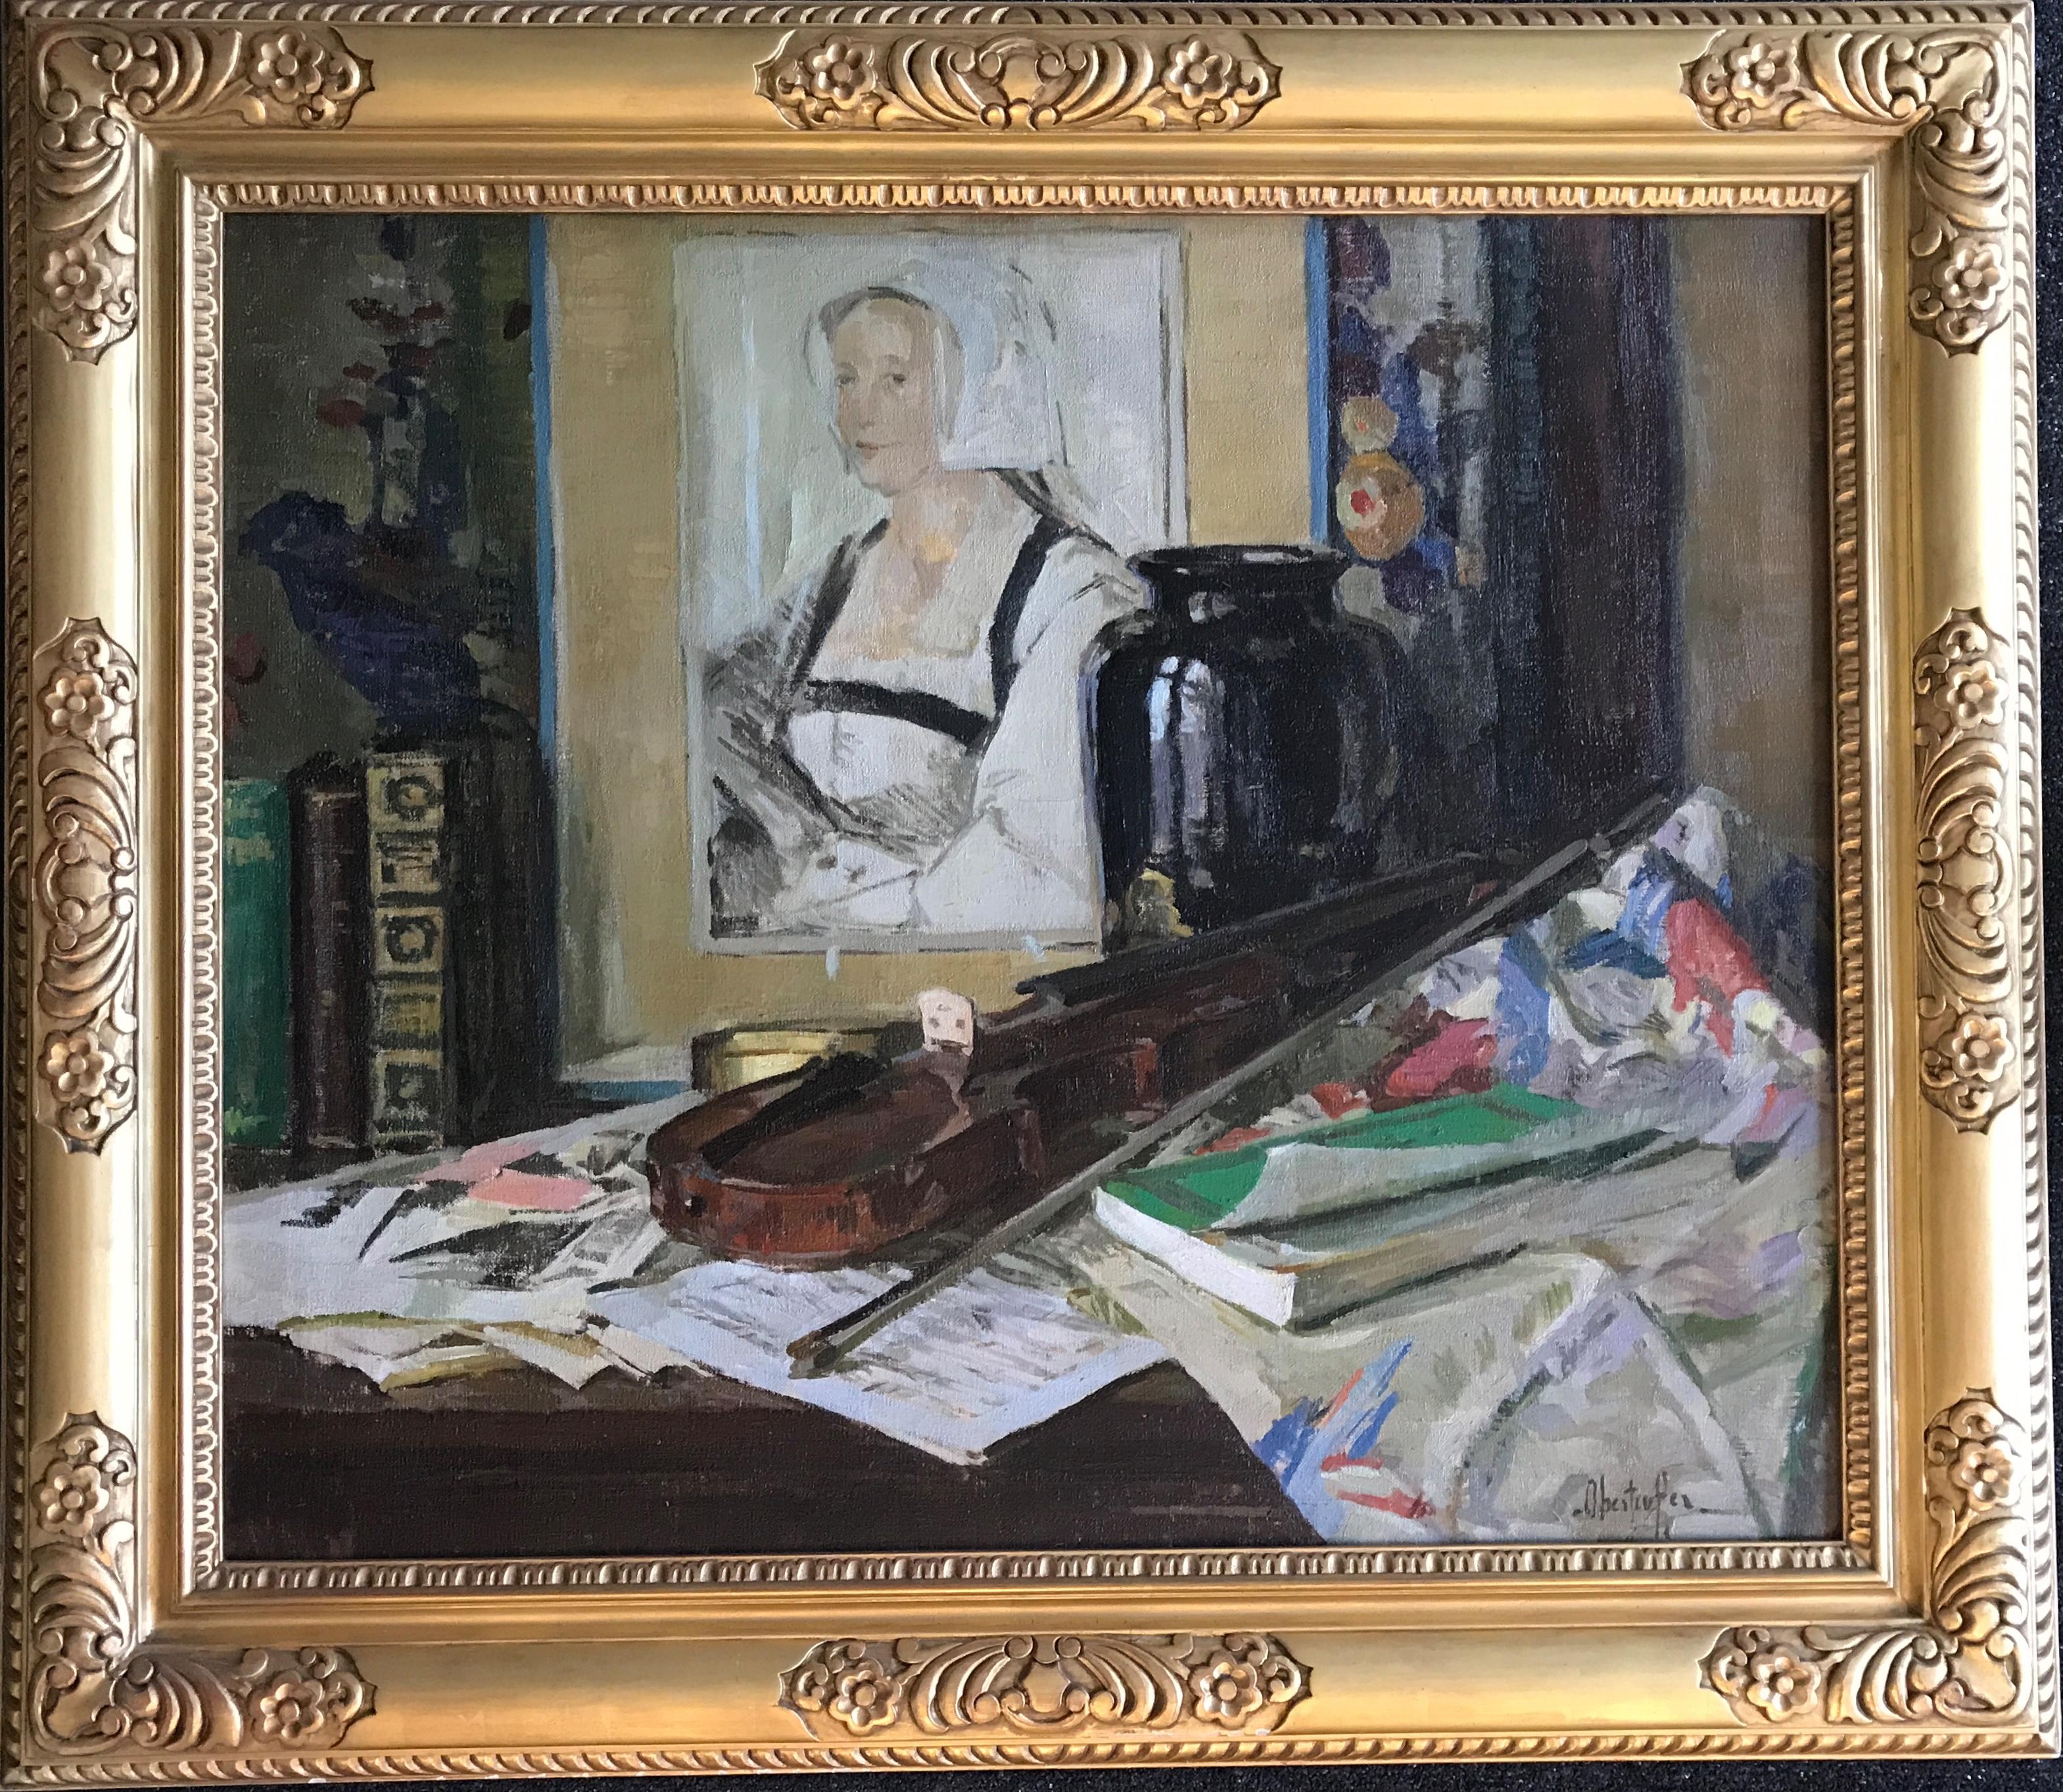 Nature morte impressionniste classique de l'artiste américain George Oberteuffer. 

Arrangement de table (c.C.1925)
Huile sur toile
30" x 36" 
39 ½" x 45 ¼" x 2 ½" encadré
Signé "Oberteuffer" en bas à droite.

À propos de l'artiste : Oberteuffer a